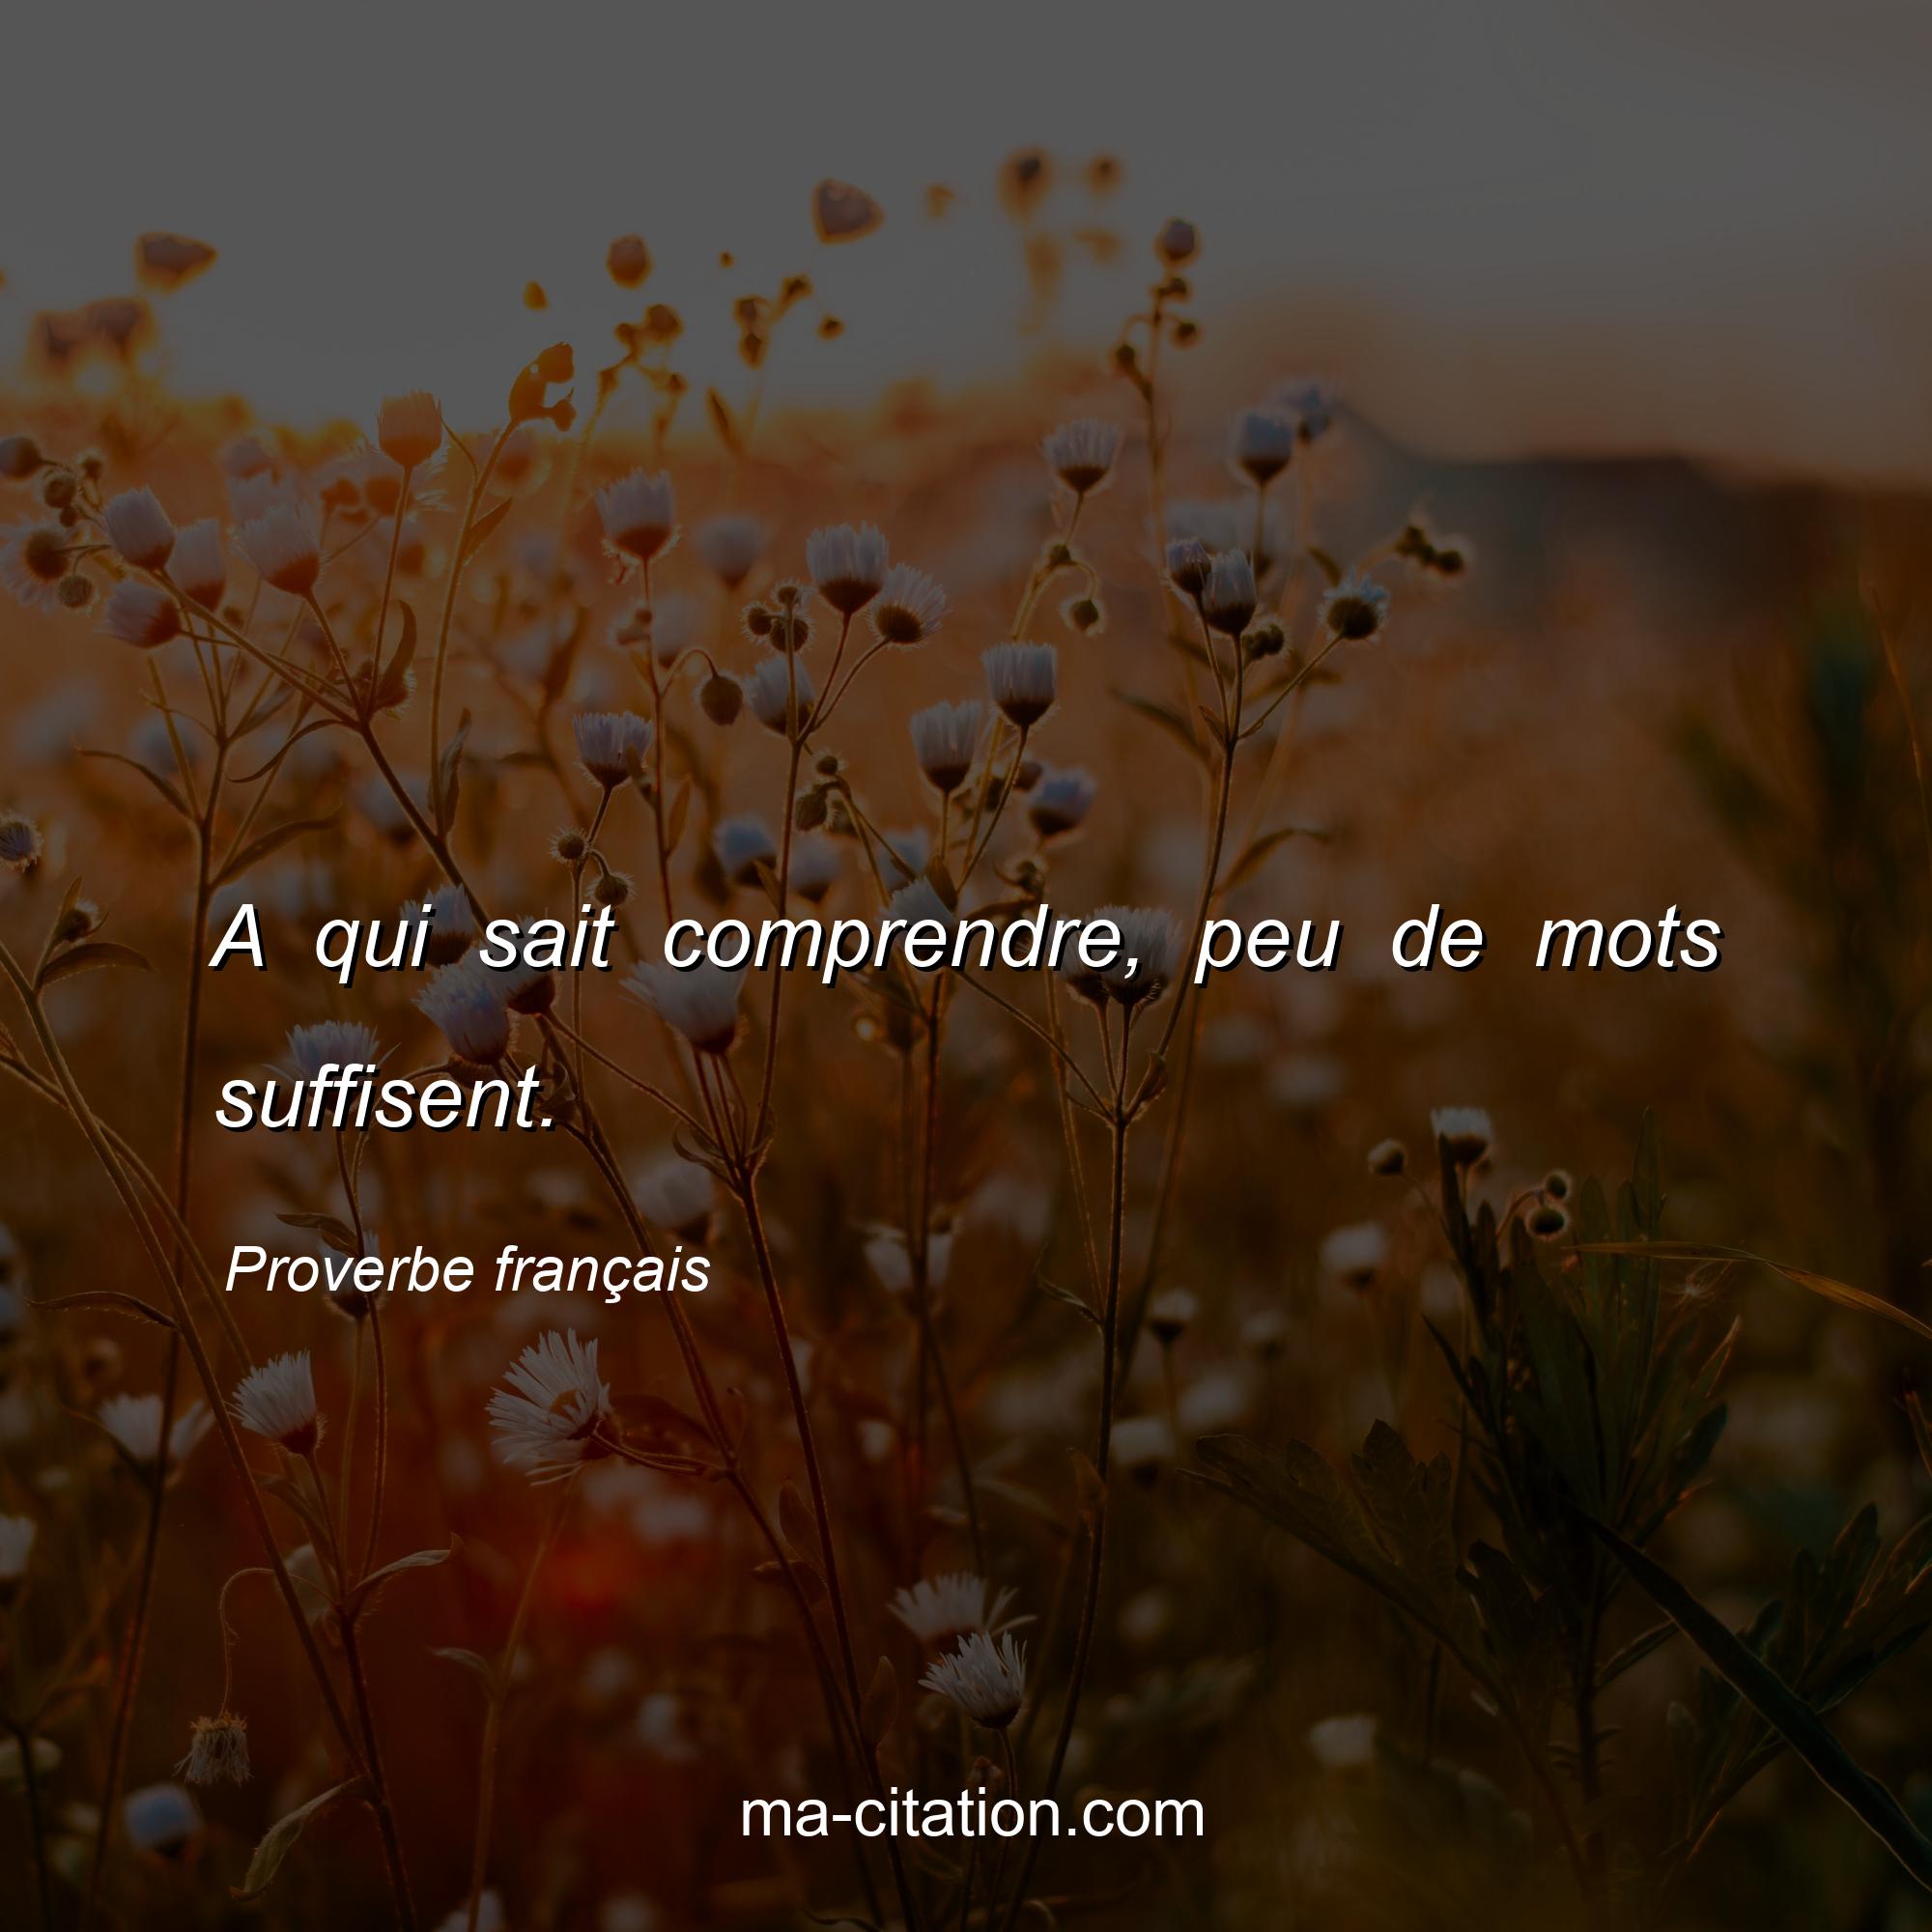 Proverbe français : A qui sait comprendre, peu de mots suffisent.